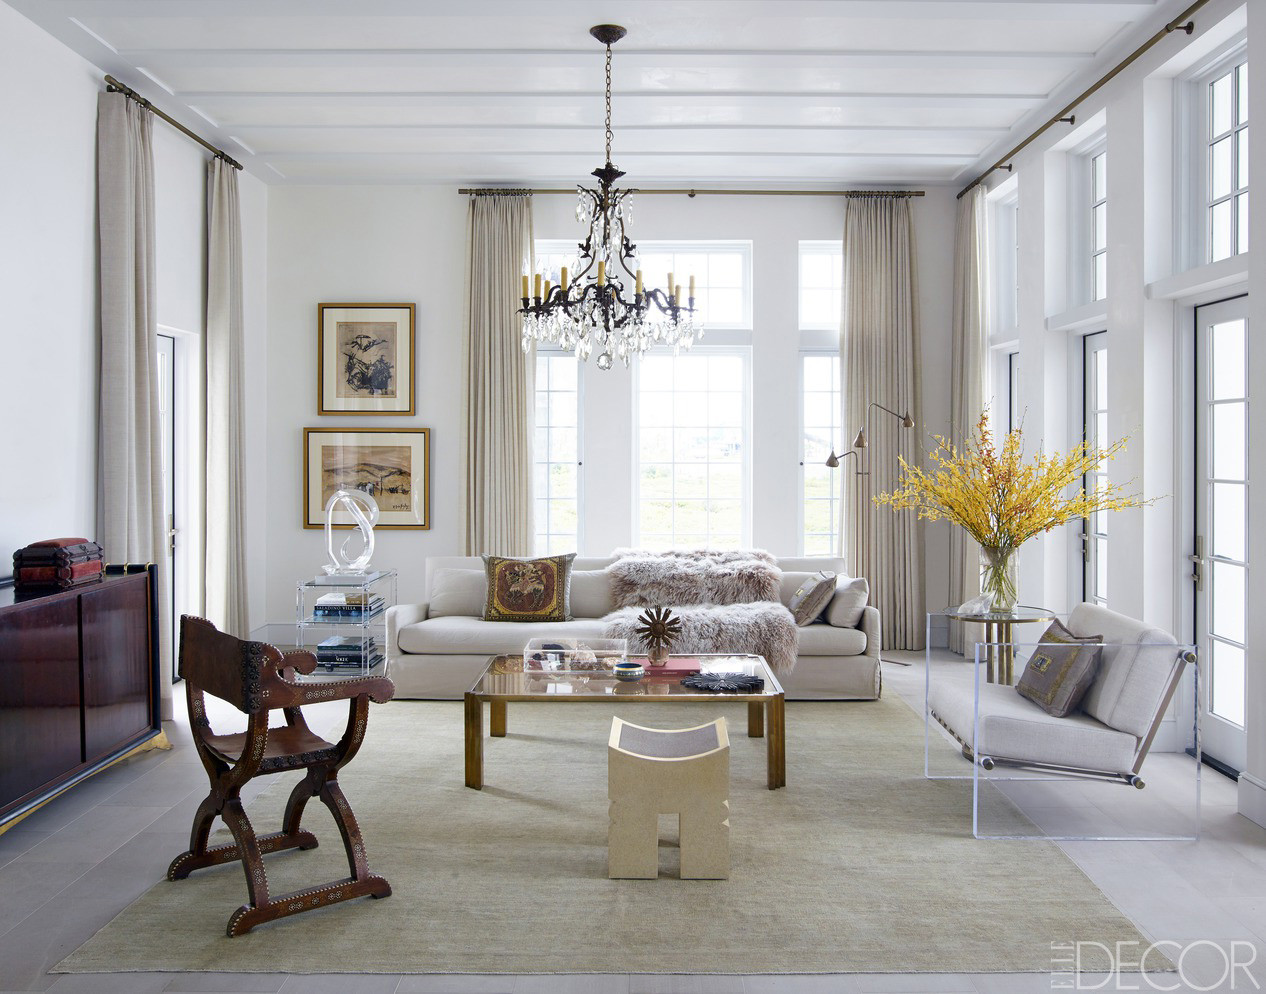 Best ideas about Living Room Decoration
. Save or Pin Chic Living Room Decorating Ideas and Design ELLE DECOR Now.